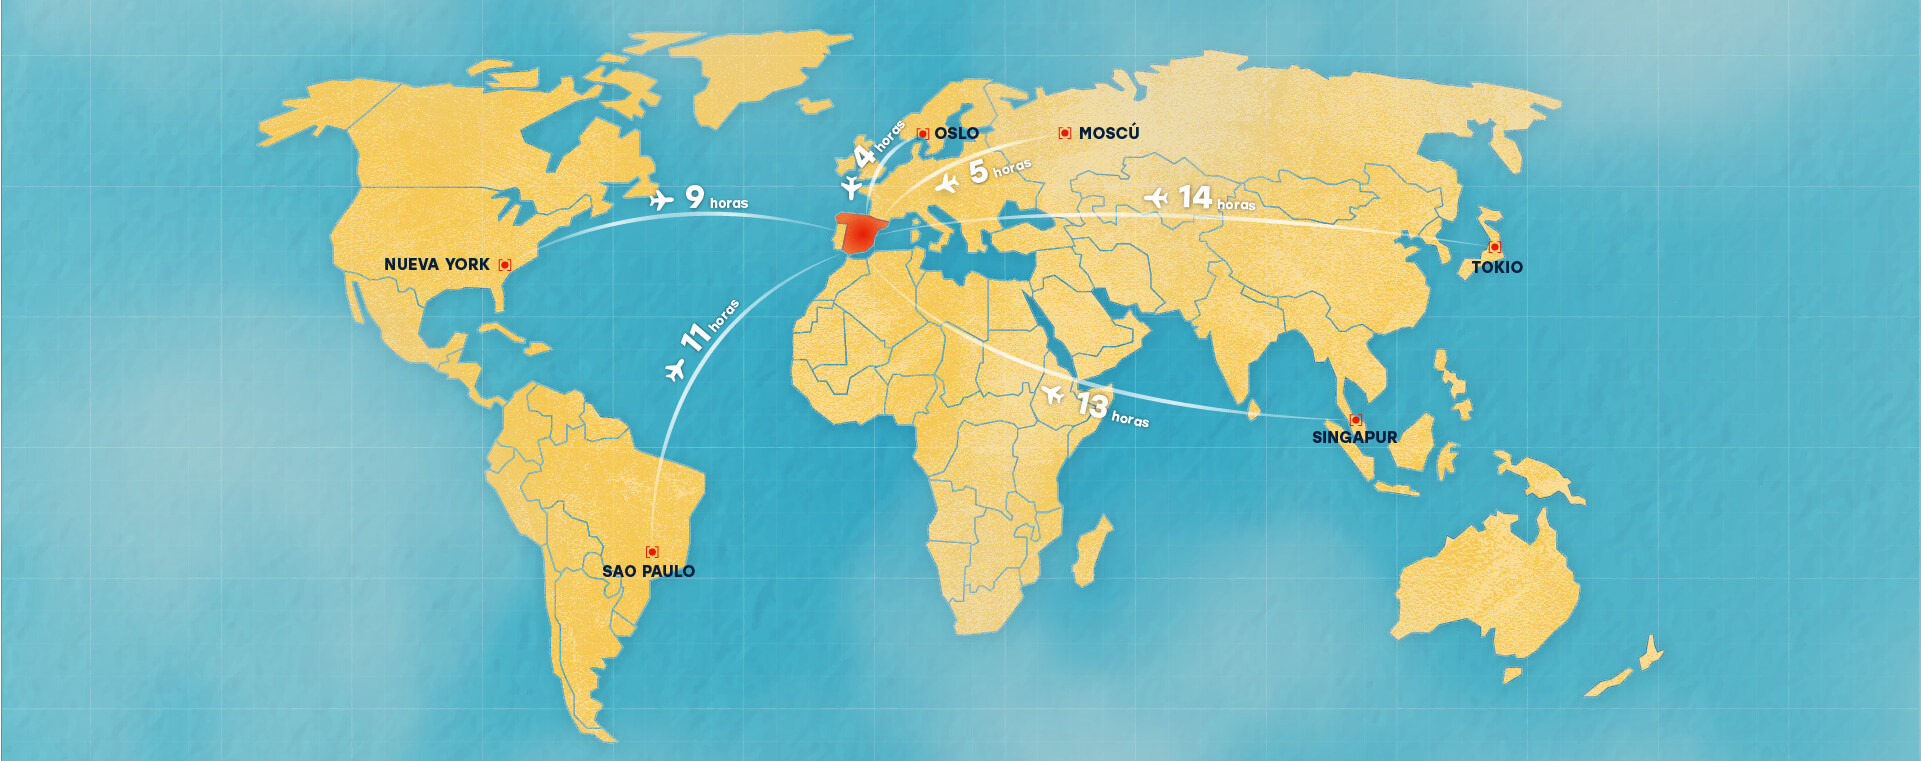 Mapa del mundo y sus distancias de tiempo en avión